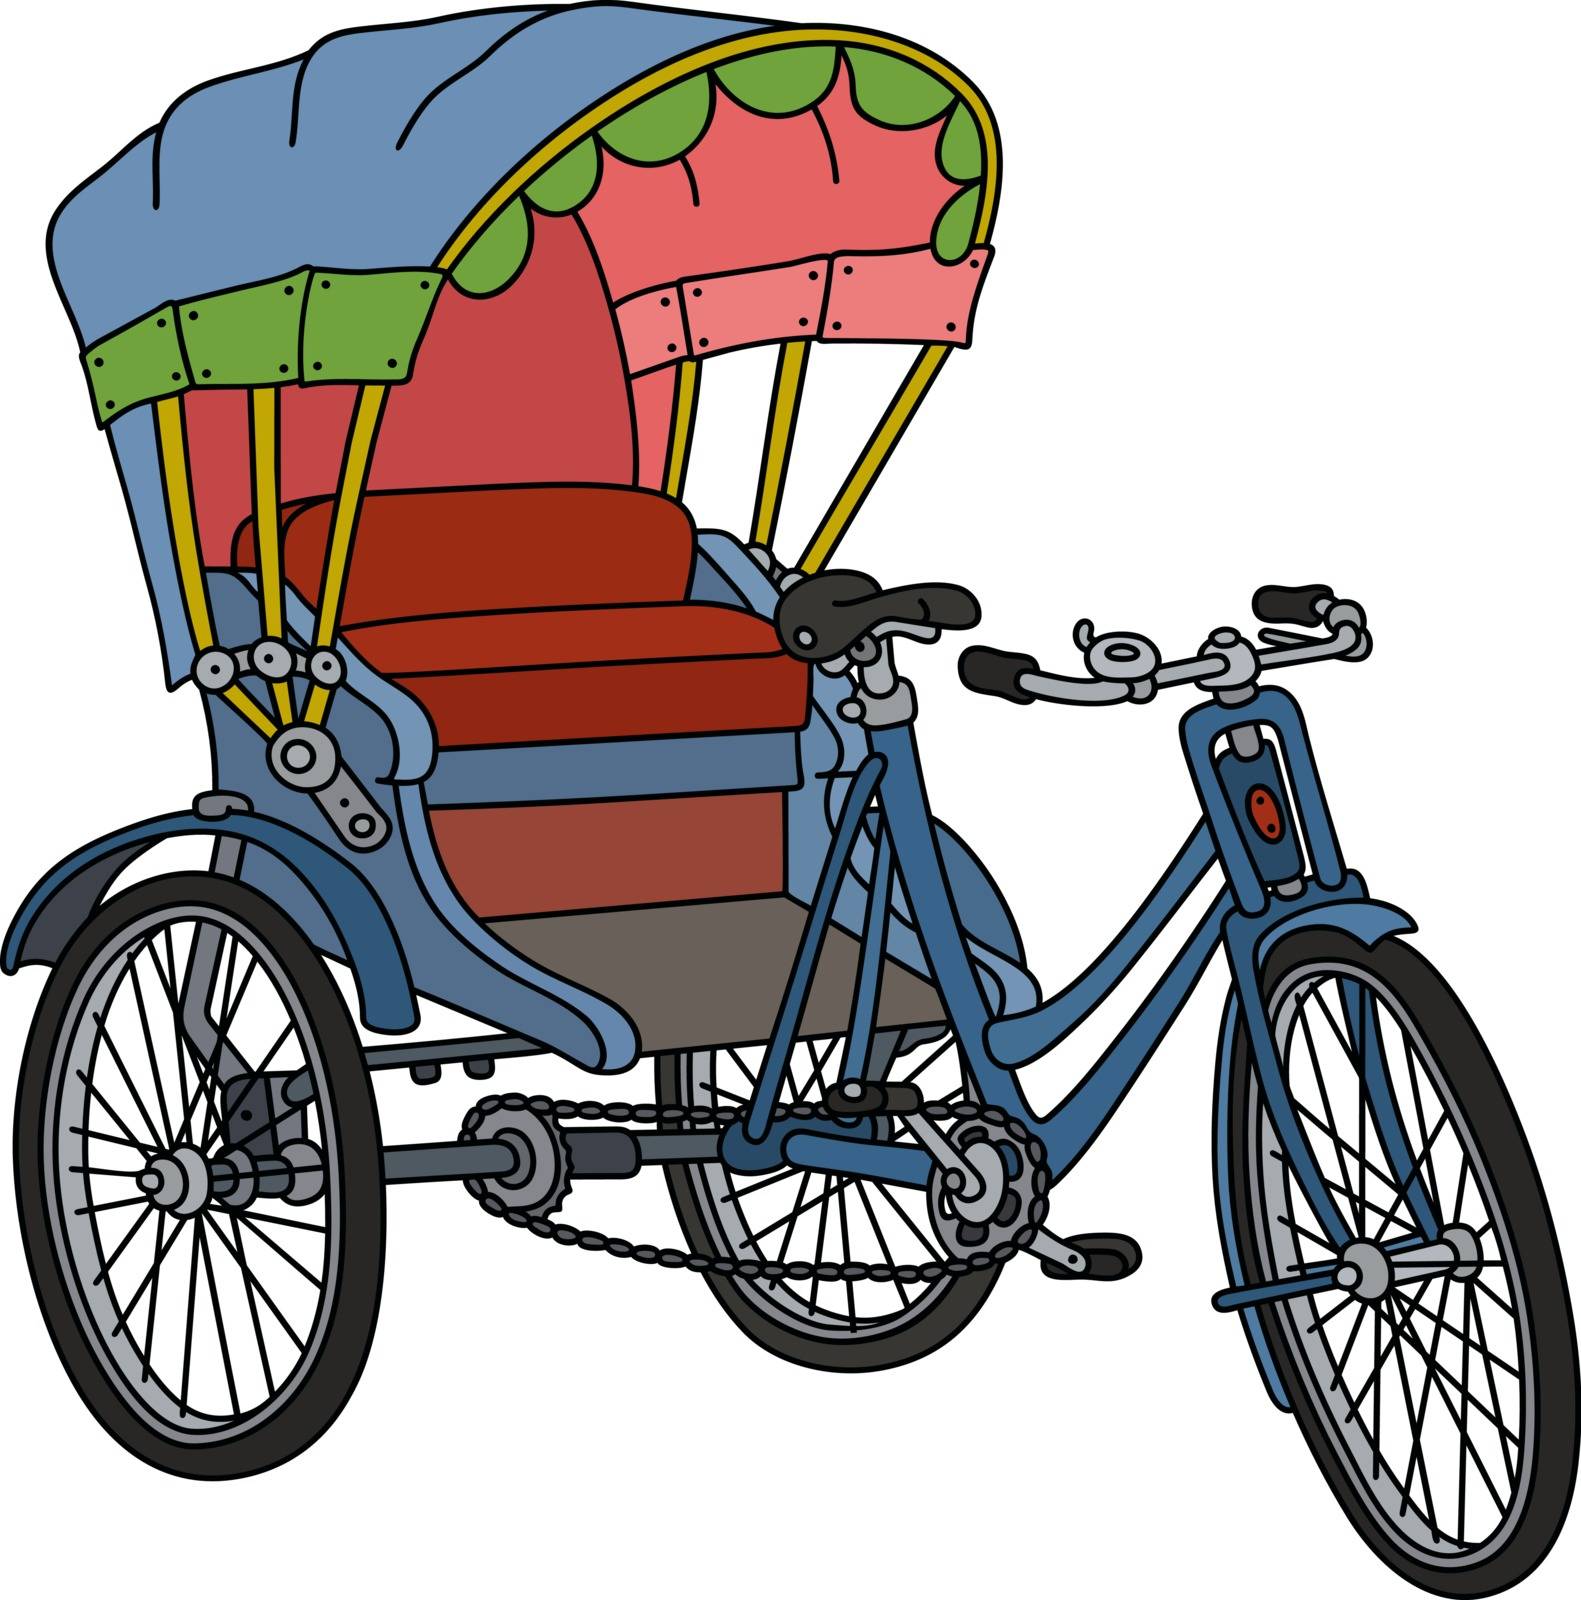 Hand drawing of a classic bangladeshi cycle rickshaw